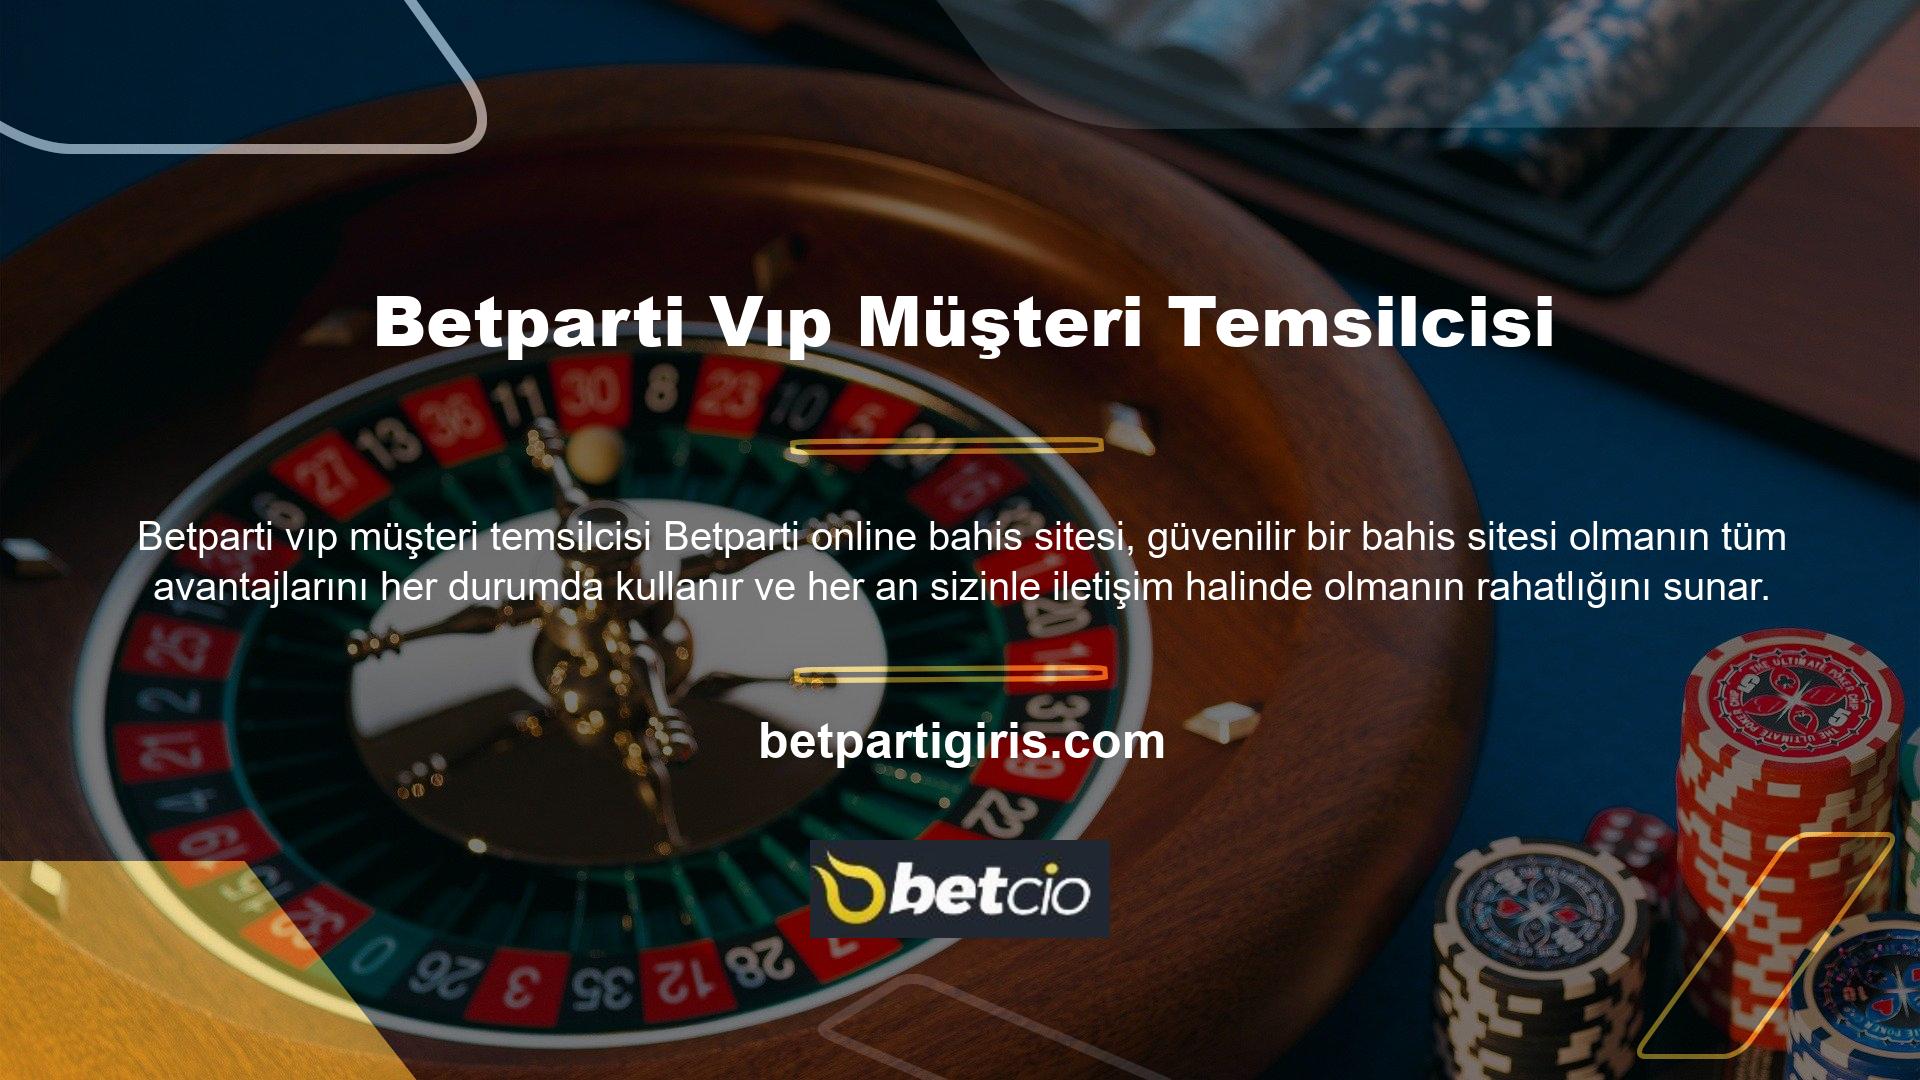 Betparti online bahis sitesine üye olmak size VIP üyelik ayrıcalıkları sağlar